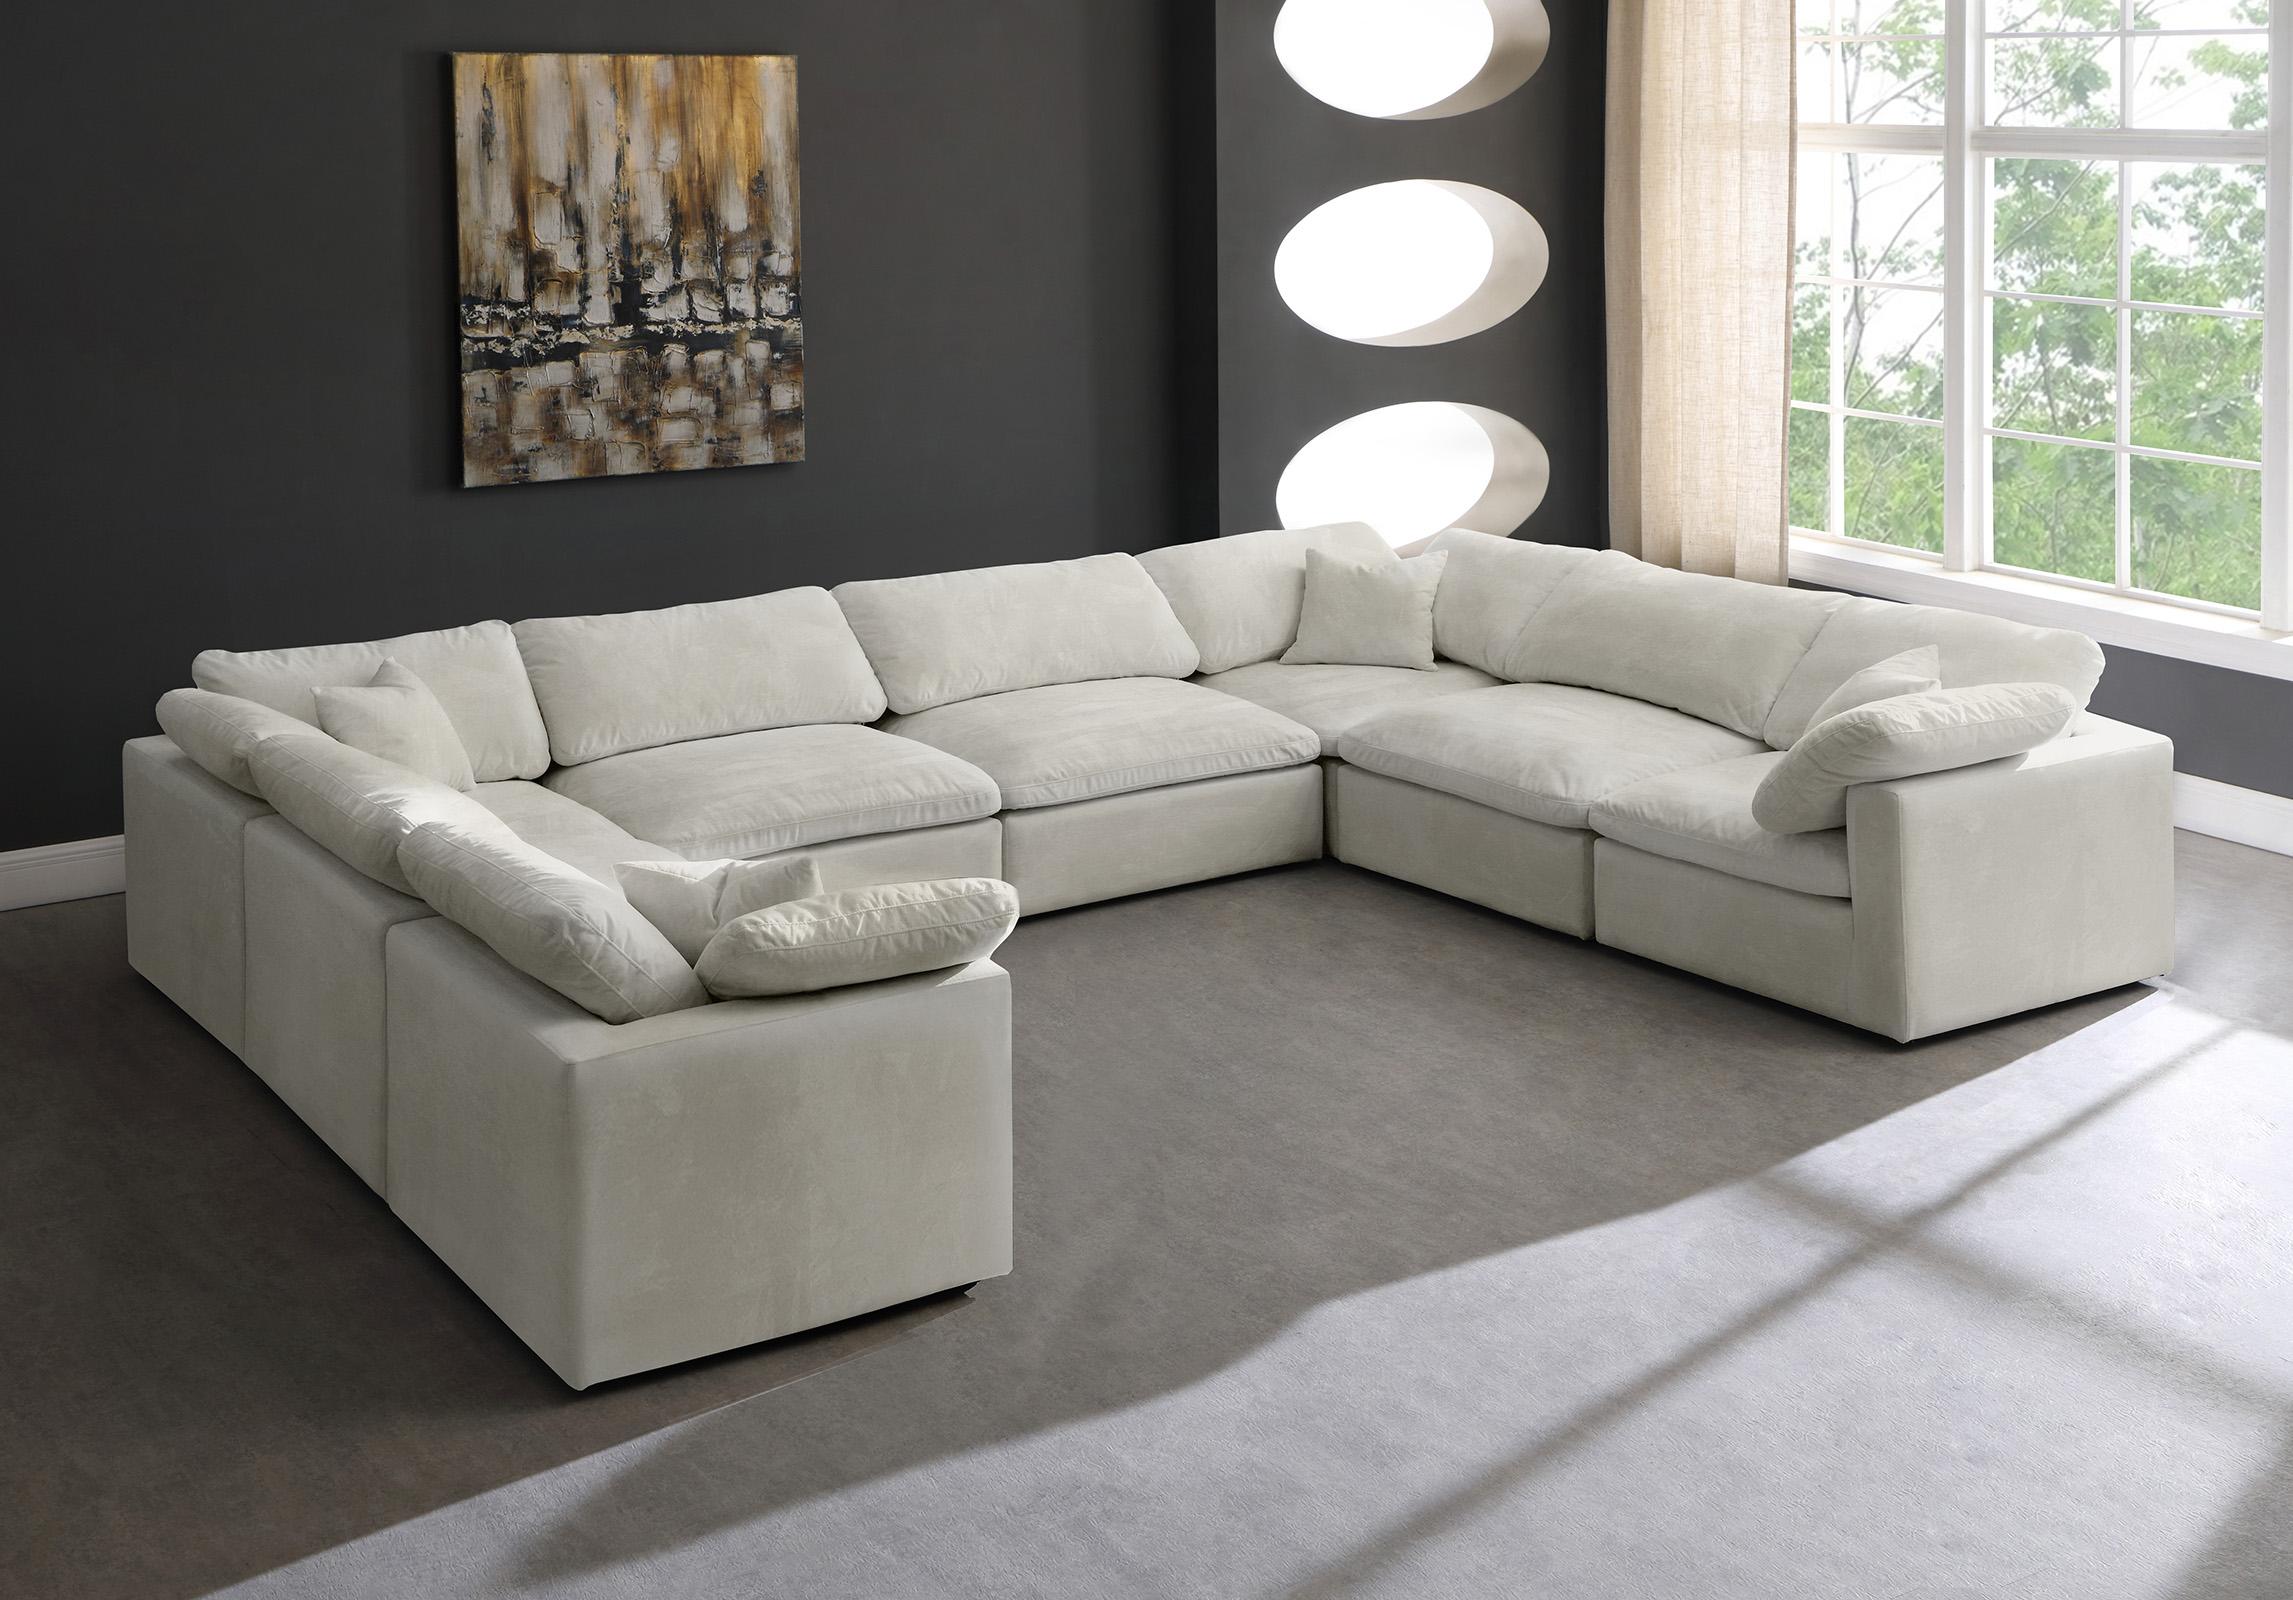 

    
Meridian Furniture 634Cream-Sec8A Modular Sectional Cream 634Cream-Sec8A
